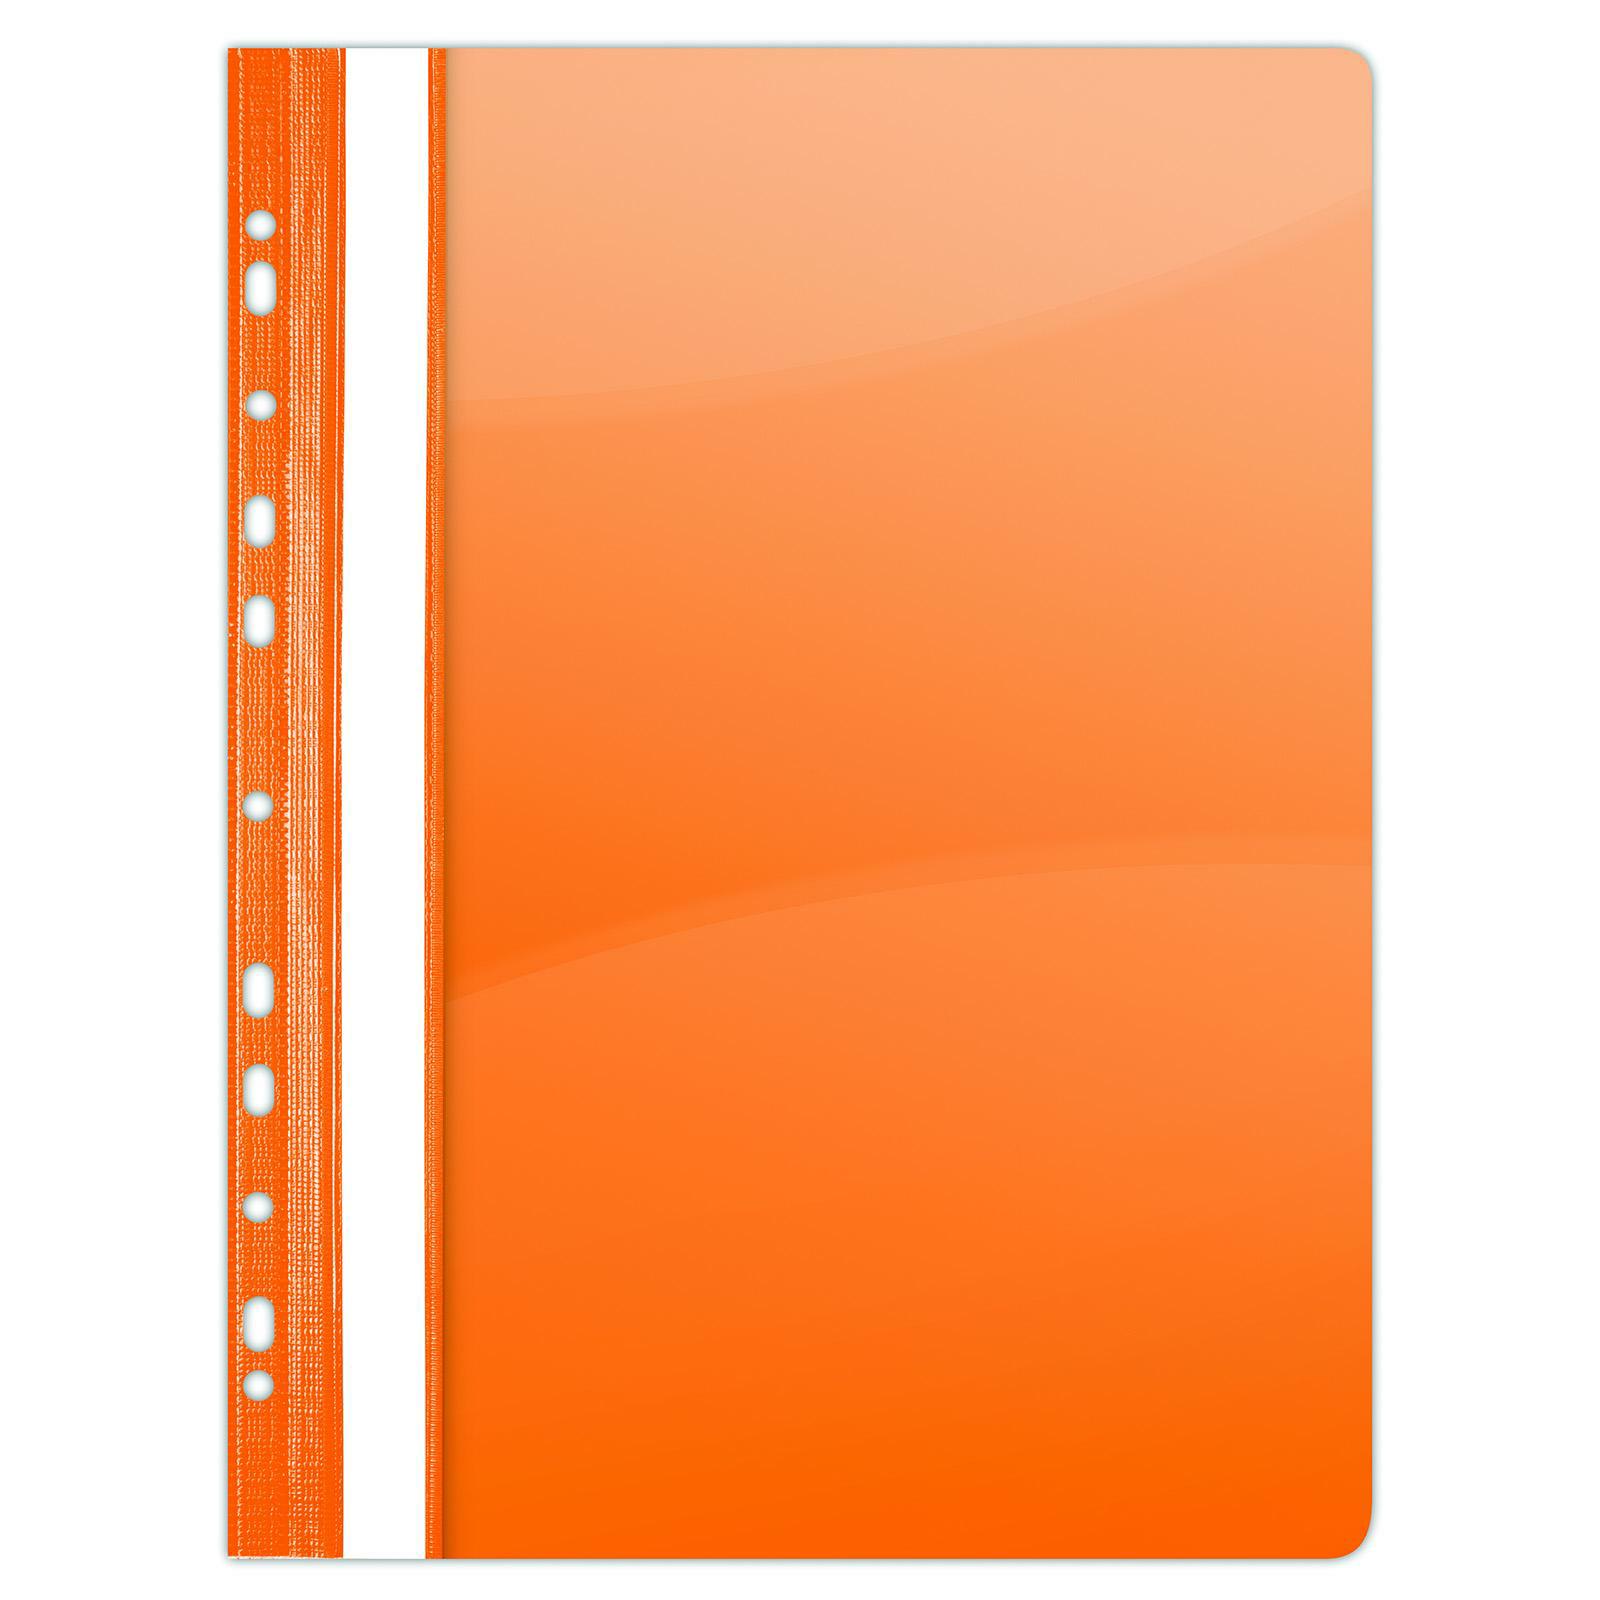 Rychlovazač Donau PVC A4, euroděrování, 150/160 mic, oranžový